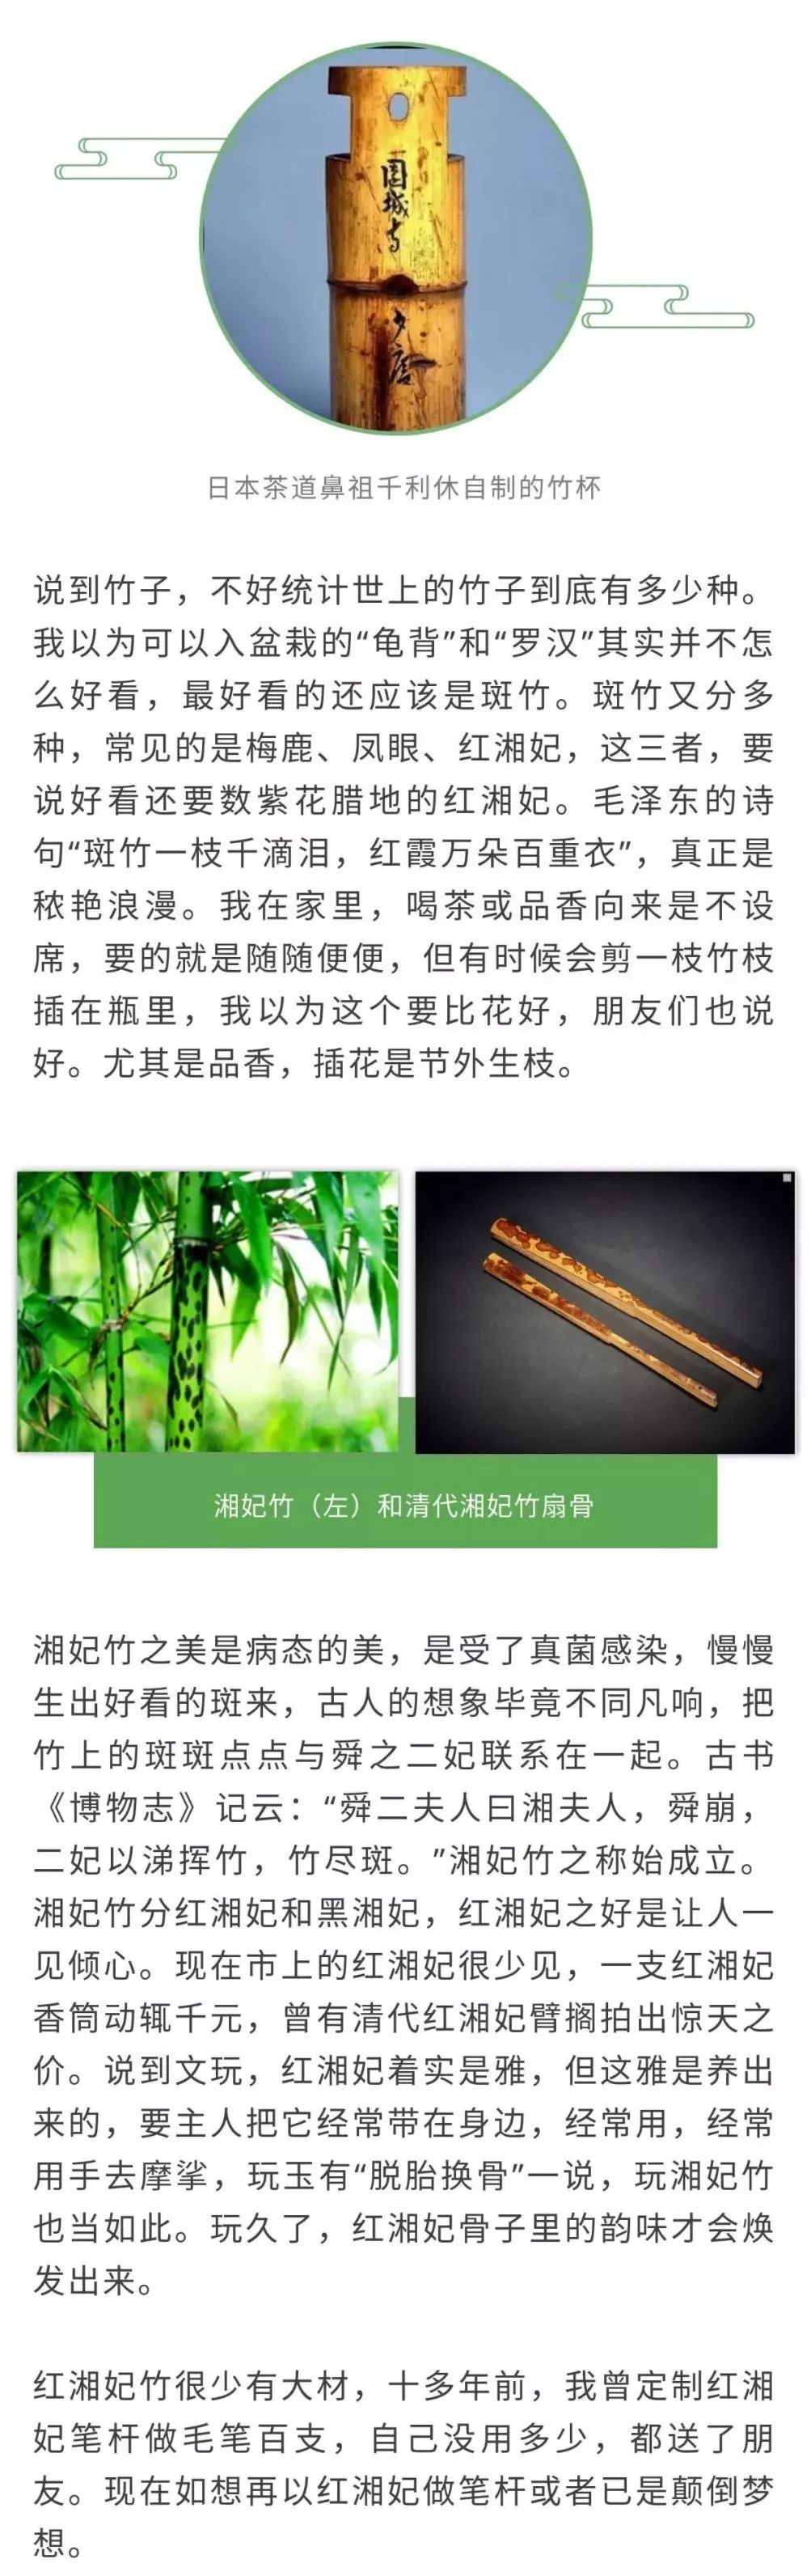 空调和竹子造句